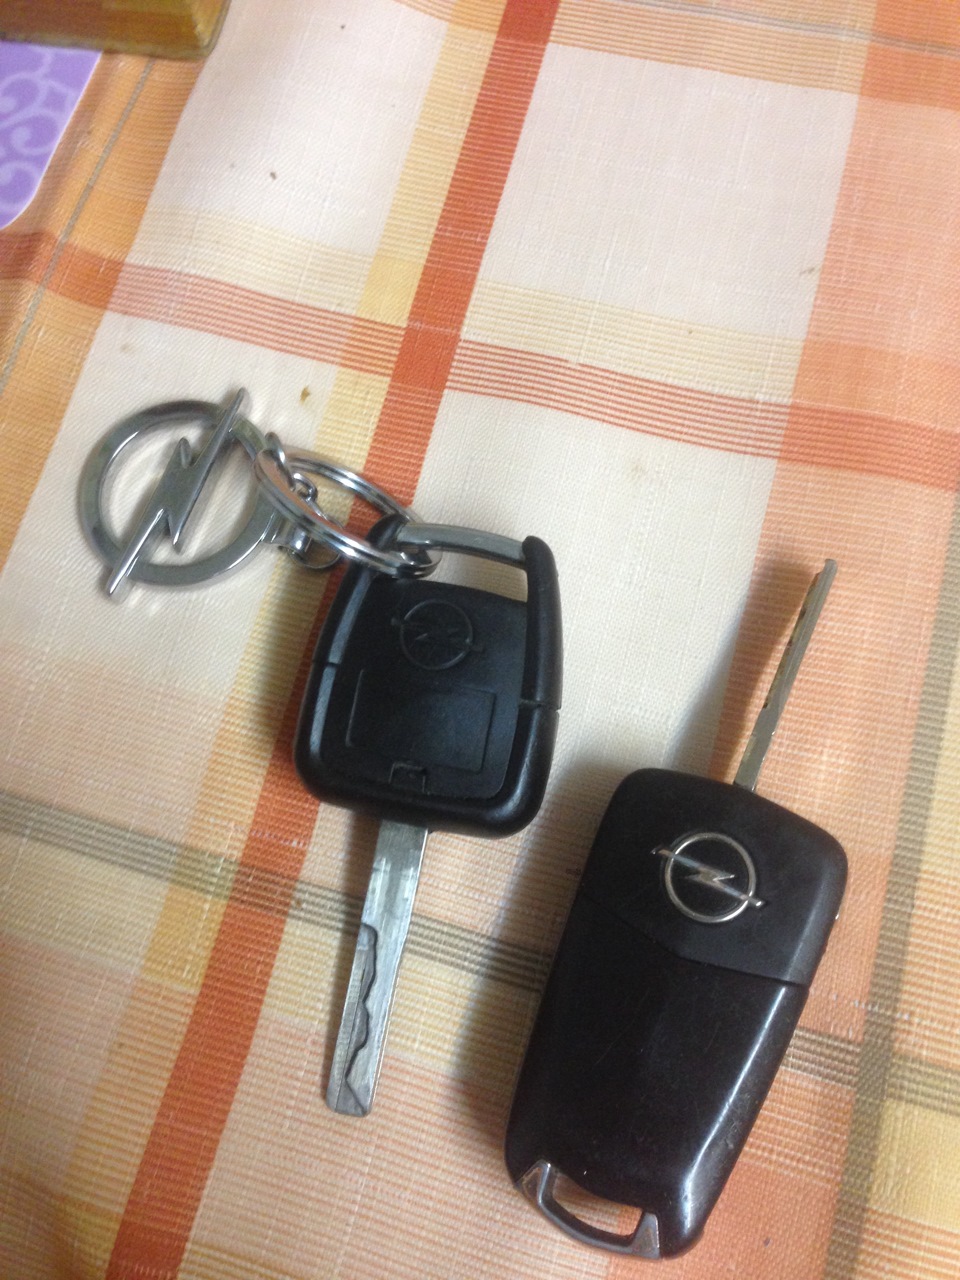 Ключи опель вектра б. Ключ зажигания Вектра б выкидной. Ключ Опель Вектра с. Ключ Опель Вектра б. Opel Vectra a ключ.